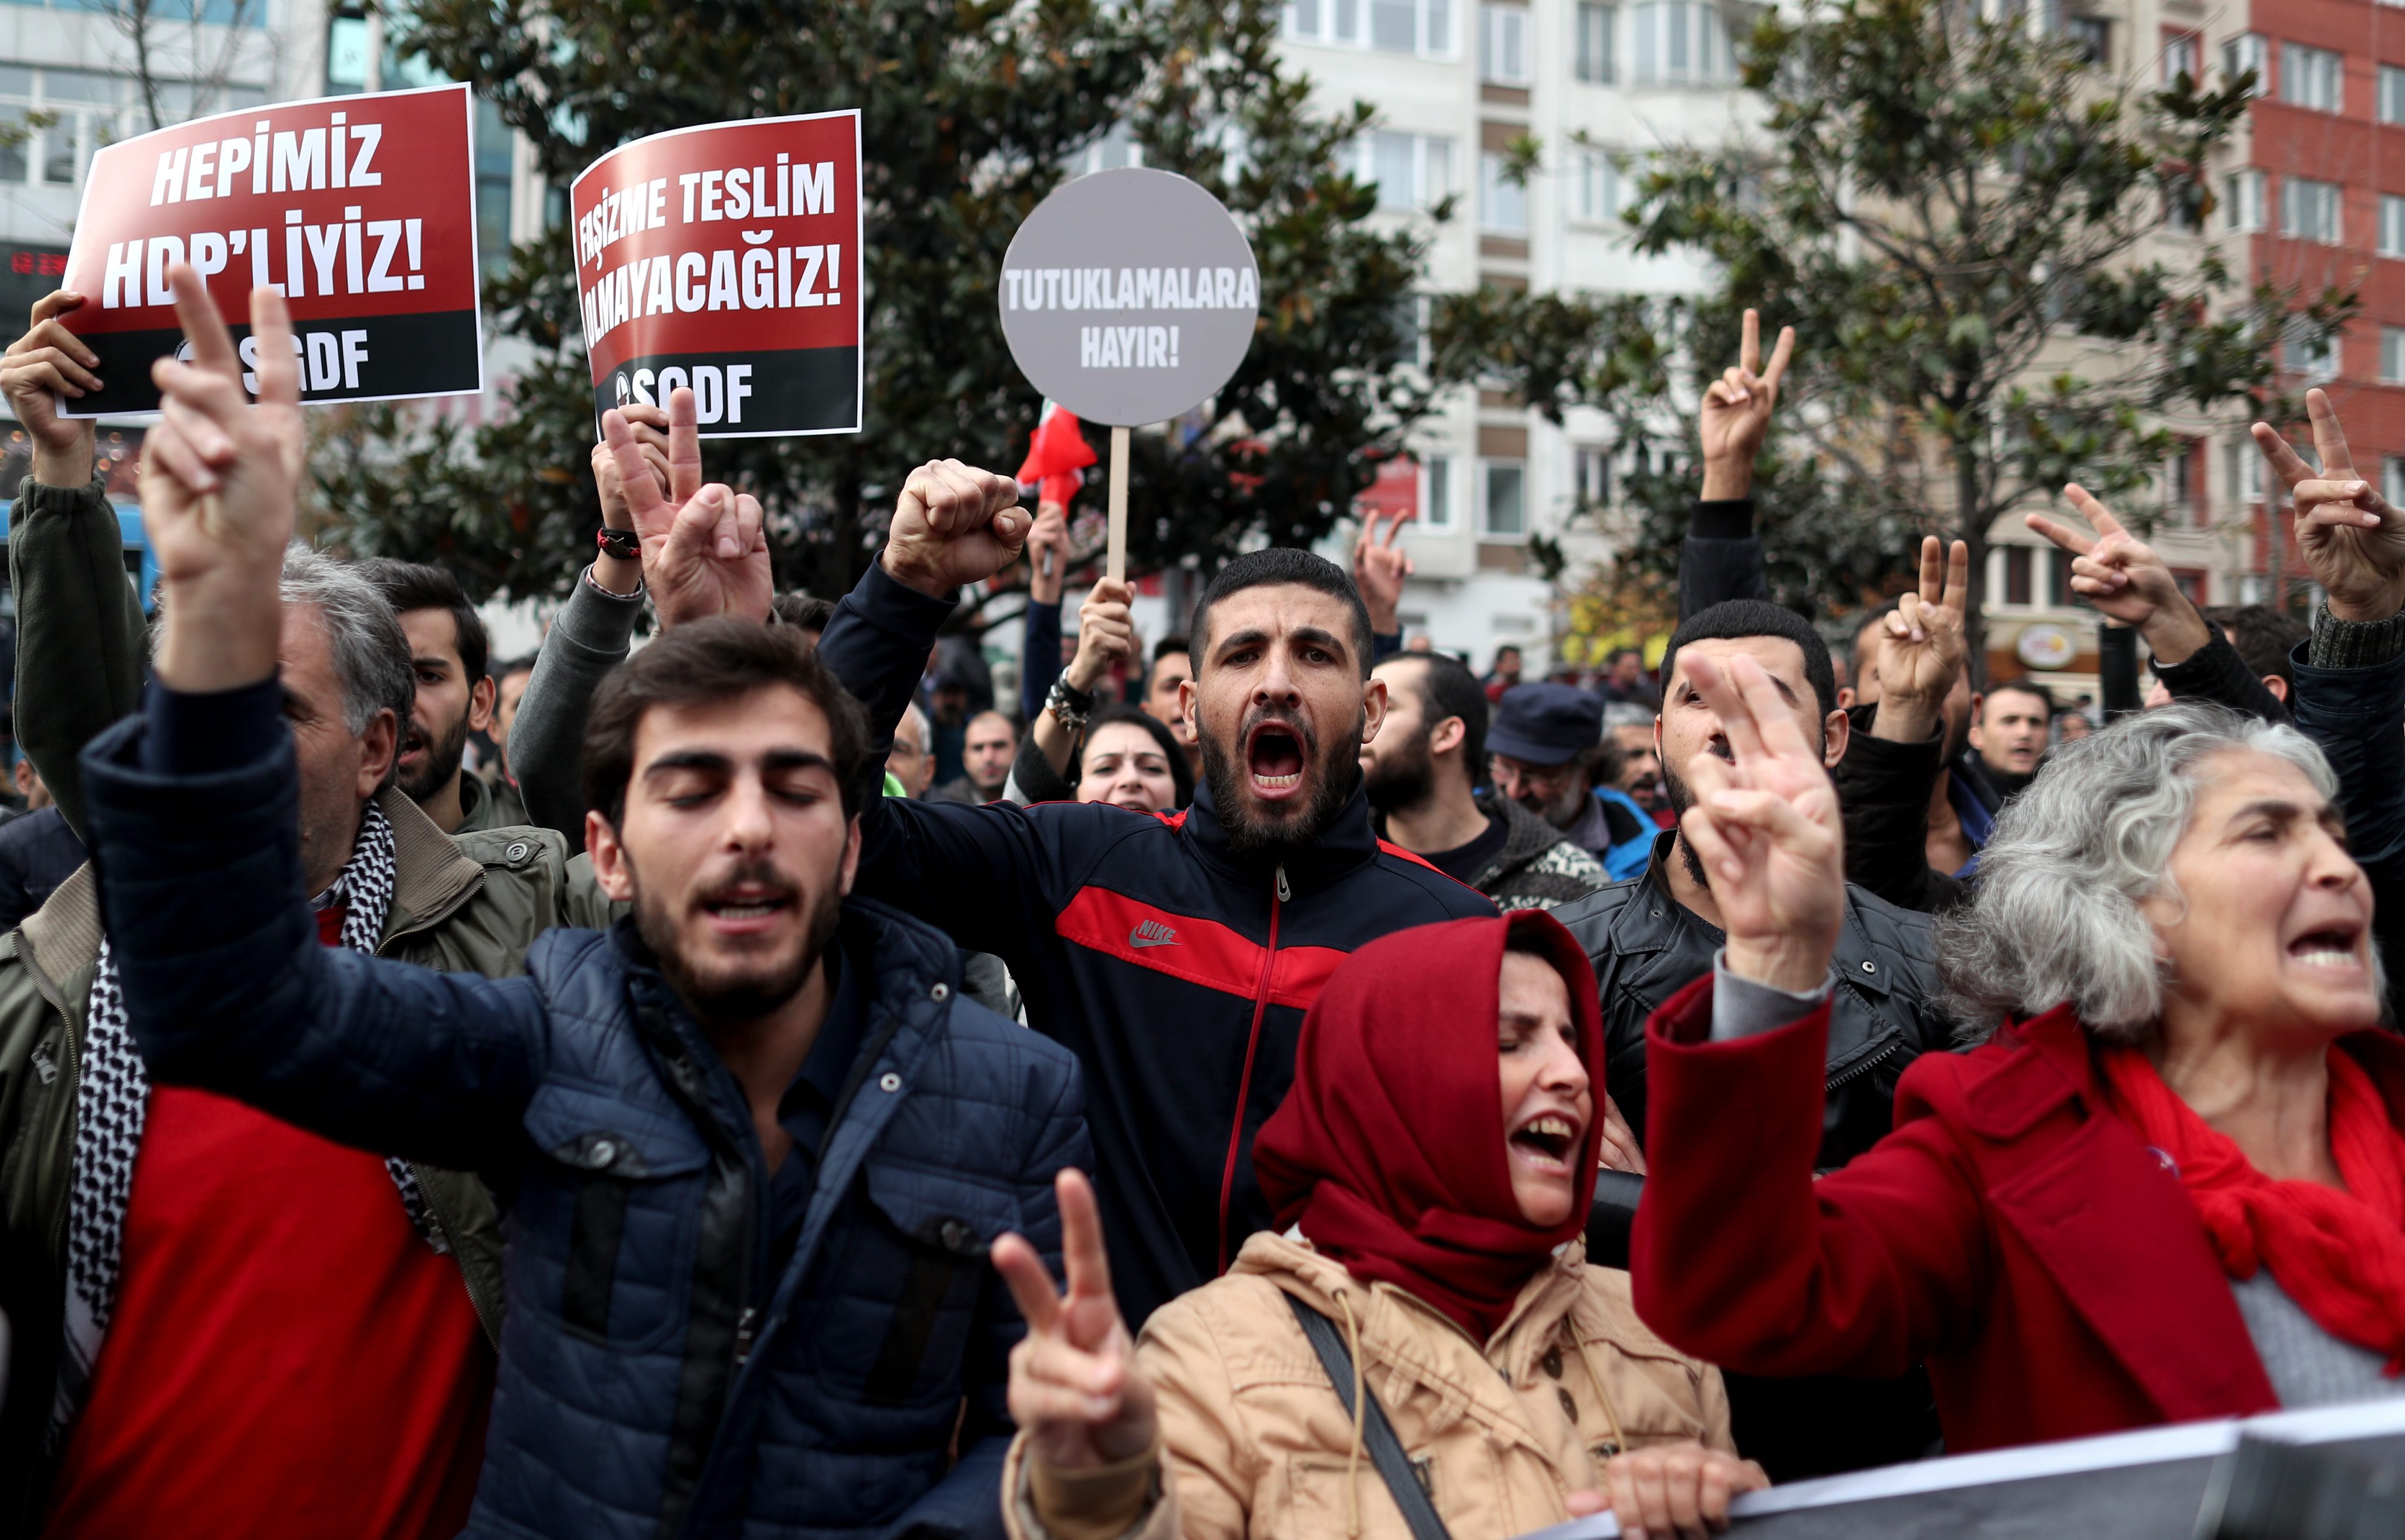 Безредици в Истанбул - турската полиция използва днес водни струи и сълзотворен газ срещу тълпи от протестиращи в града, предаде Ройтерс. Сред протестиращите са преподаватели, учители и студенти. Фоторепортер на агенцията, намиращ се на мястото на събитието, каза, че полицията опитва да спре тълпата от демонстранти, които искат да стигнат до офиса на опозиционния вестник "Джумхуриет", служители на който тази бяха задържани.